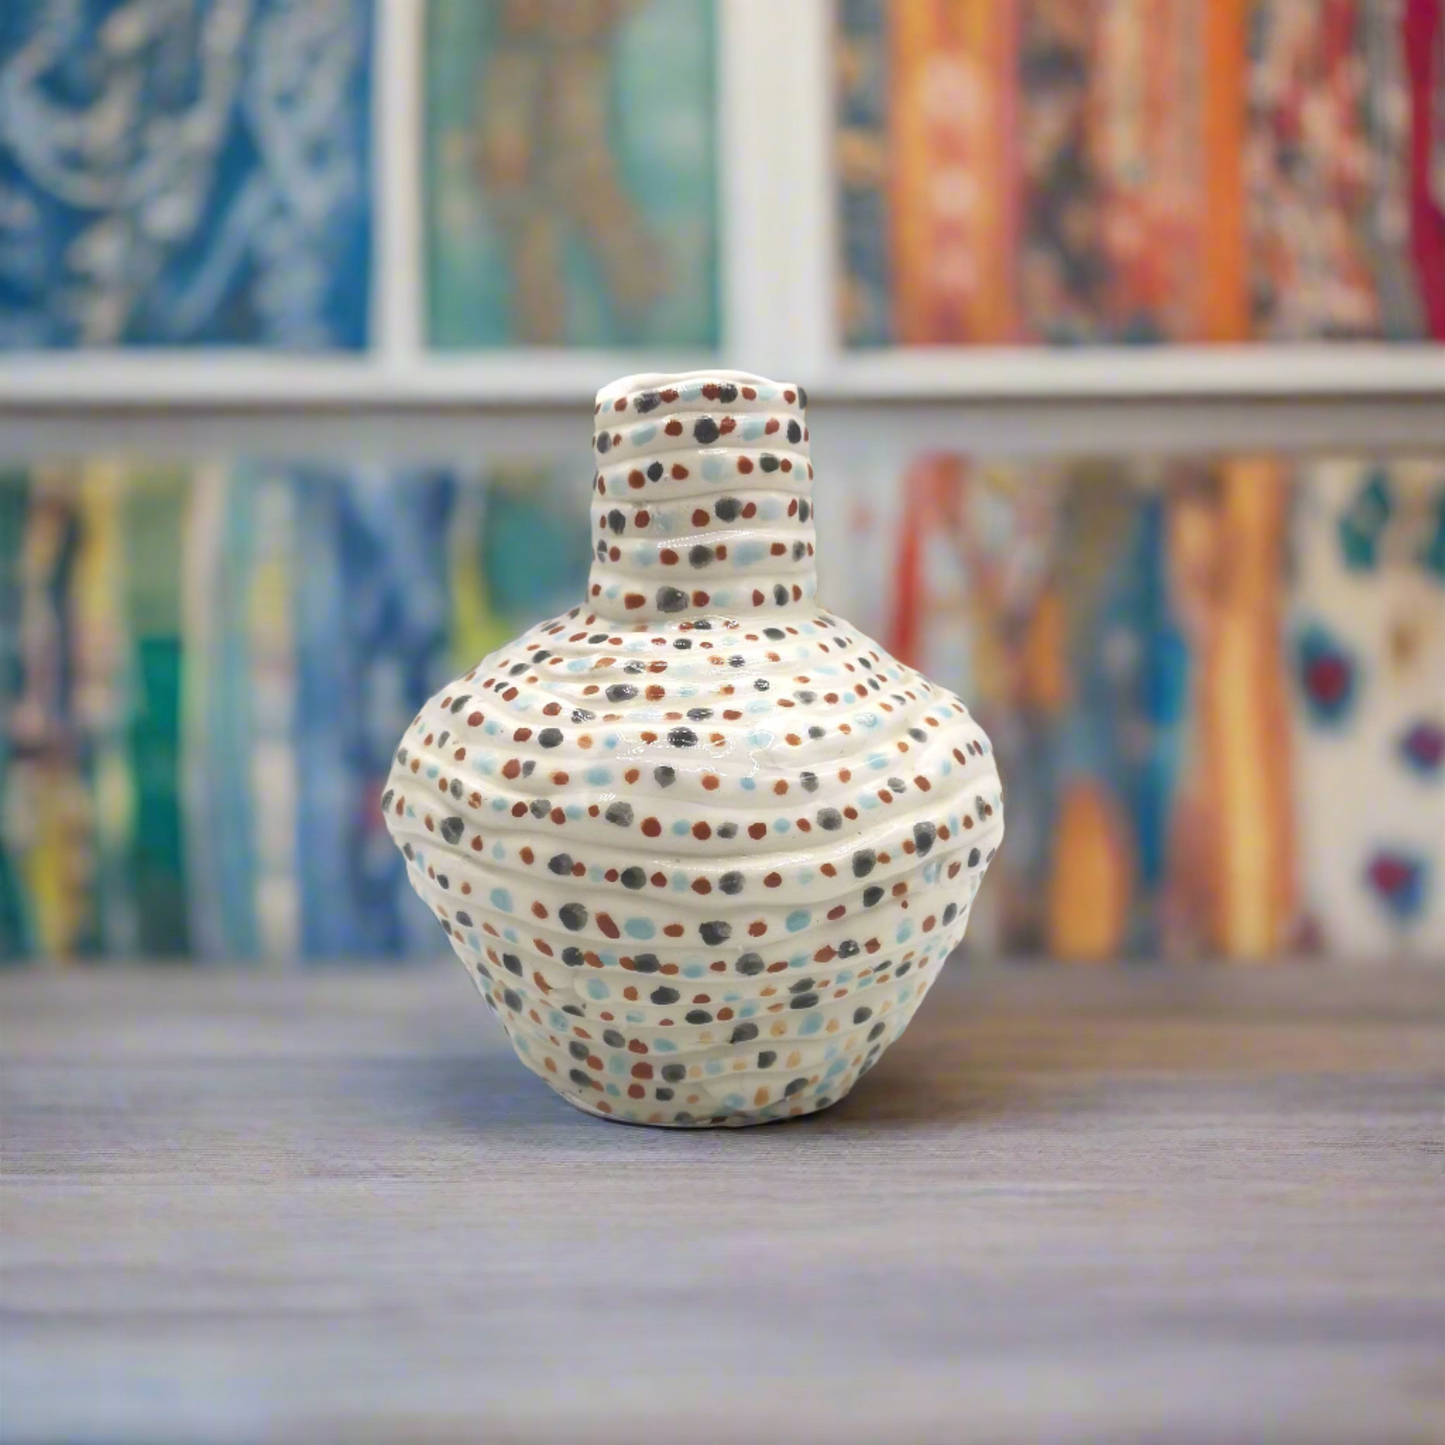 MODERNE KERAMIKVASE, Blumenvase, handgemachte weiße Keramikknospenvase für Blumen, dekorative Vase, Einweihungsgeschenk, erstes Zuhause